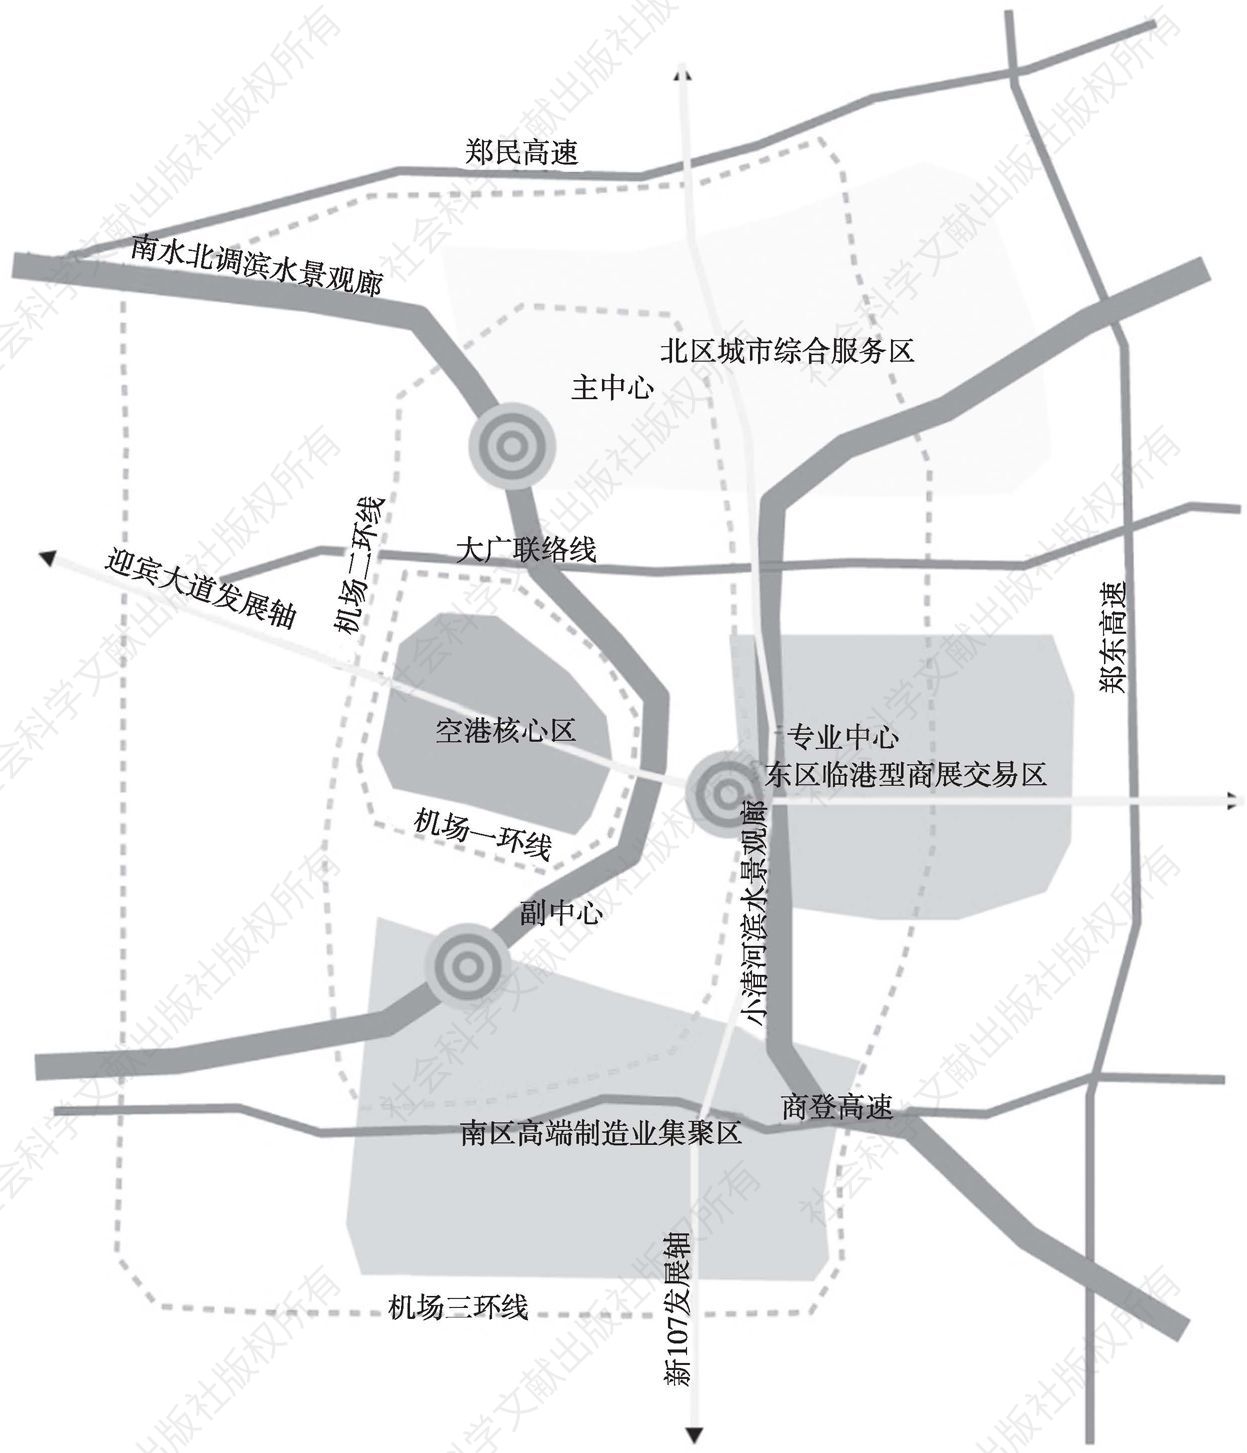 图6-3 郑州临空经济区空间布局示意